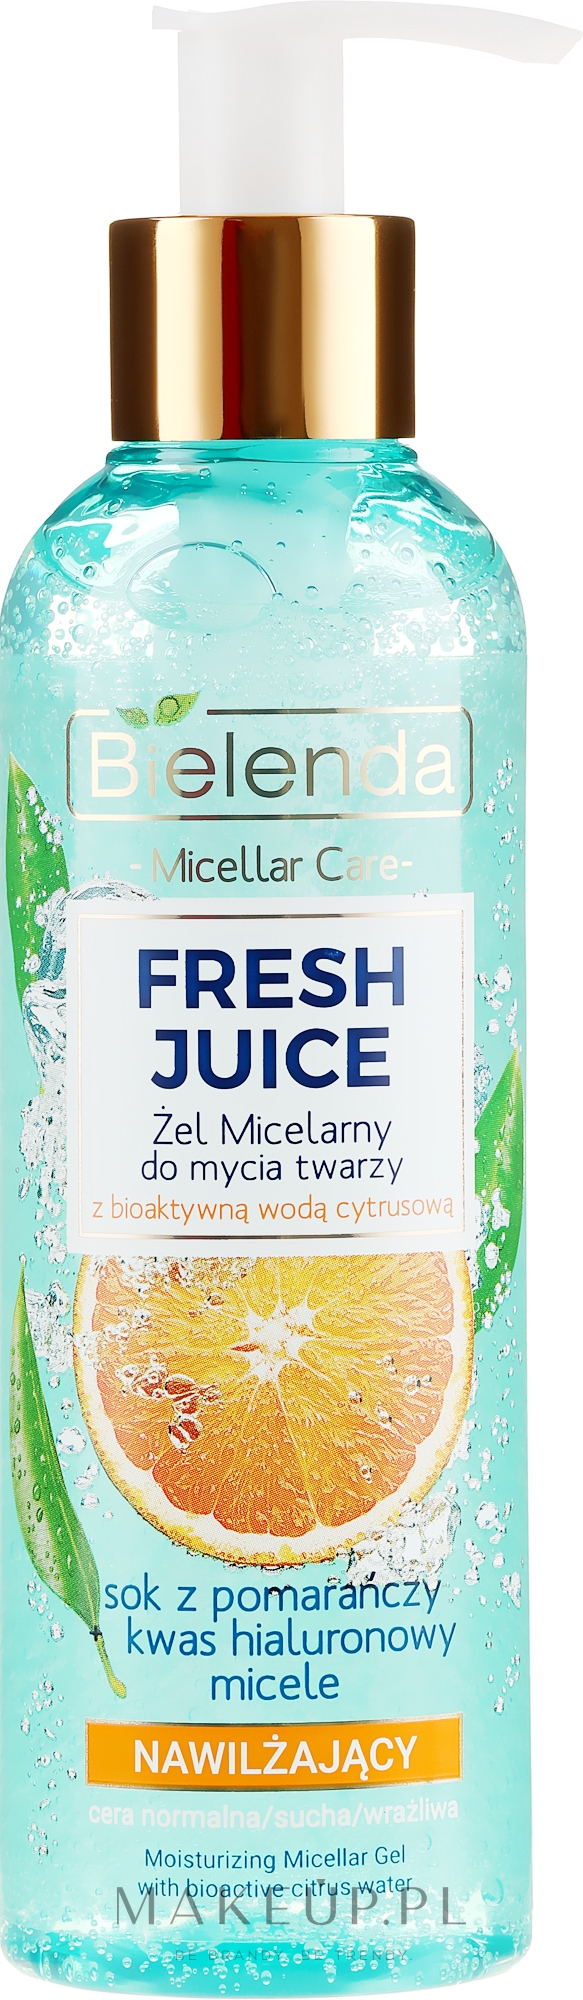 Nawilżający żel micelarny do twarzy z bioaktywną wodą cytrusową - Bielenda Fresh Juice — Zdjęcie 190 g